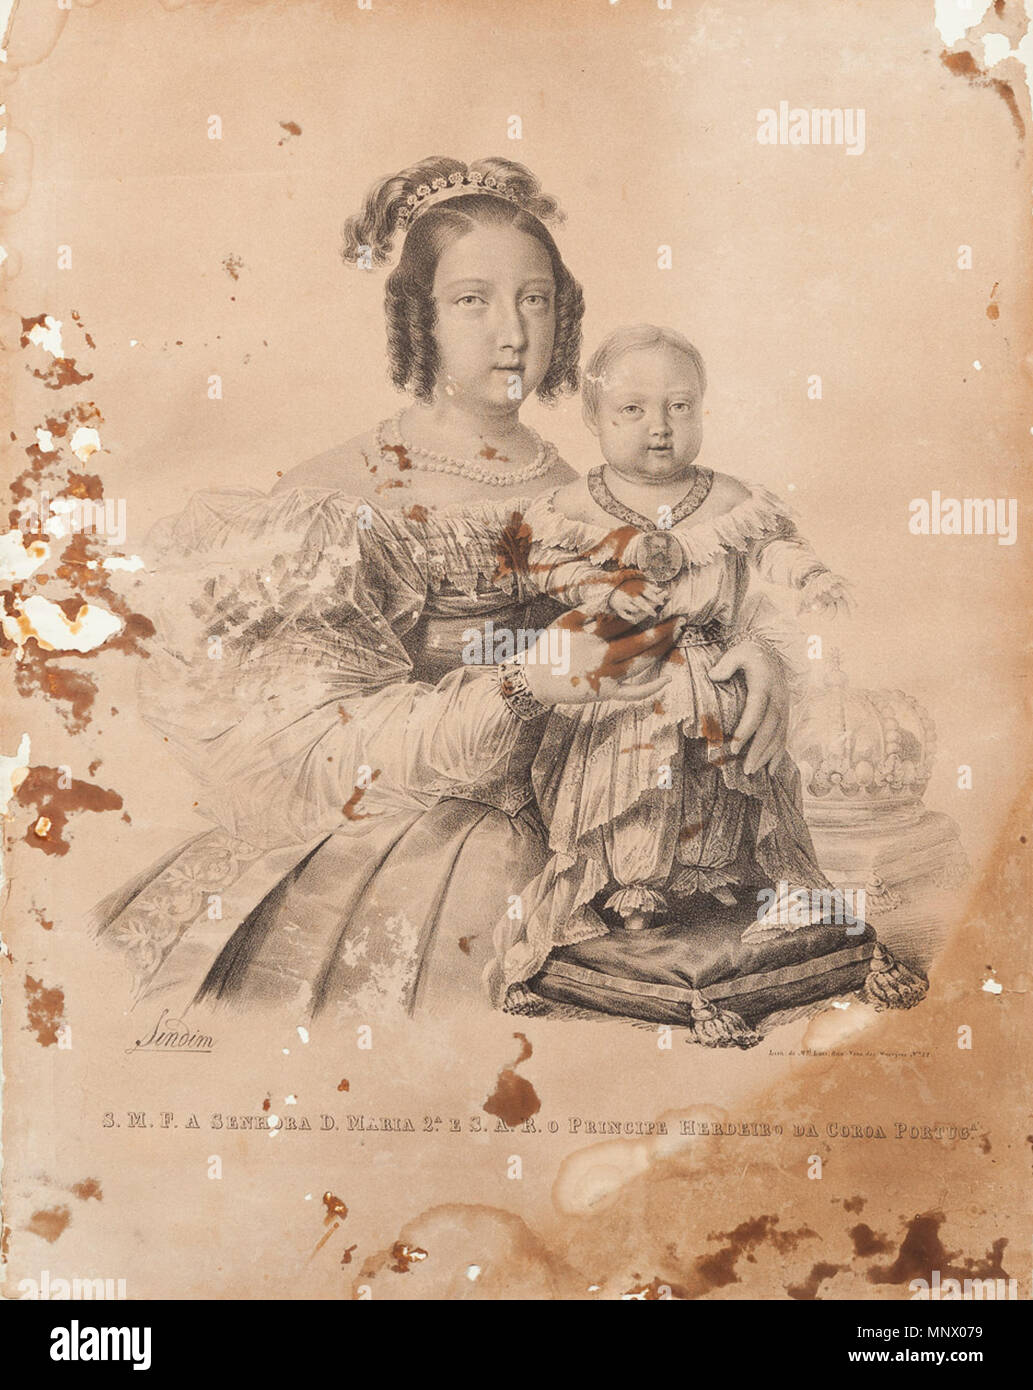 1082 S.M.F. un Senhora D. Maria 2.ª e S.A.R. o Príncipe Herdeiro da Coroa Portog.ª (c. 1840) - Maurício José do Carmo Sendim Foto Stock